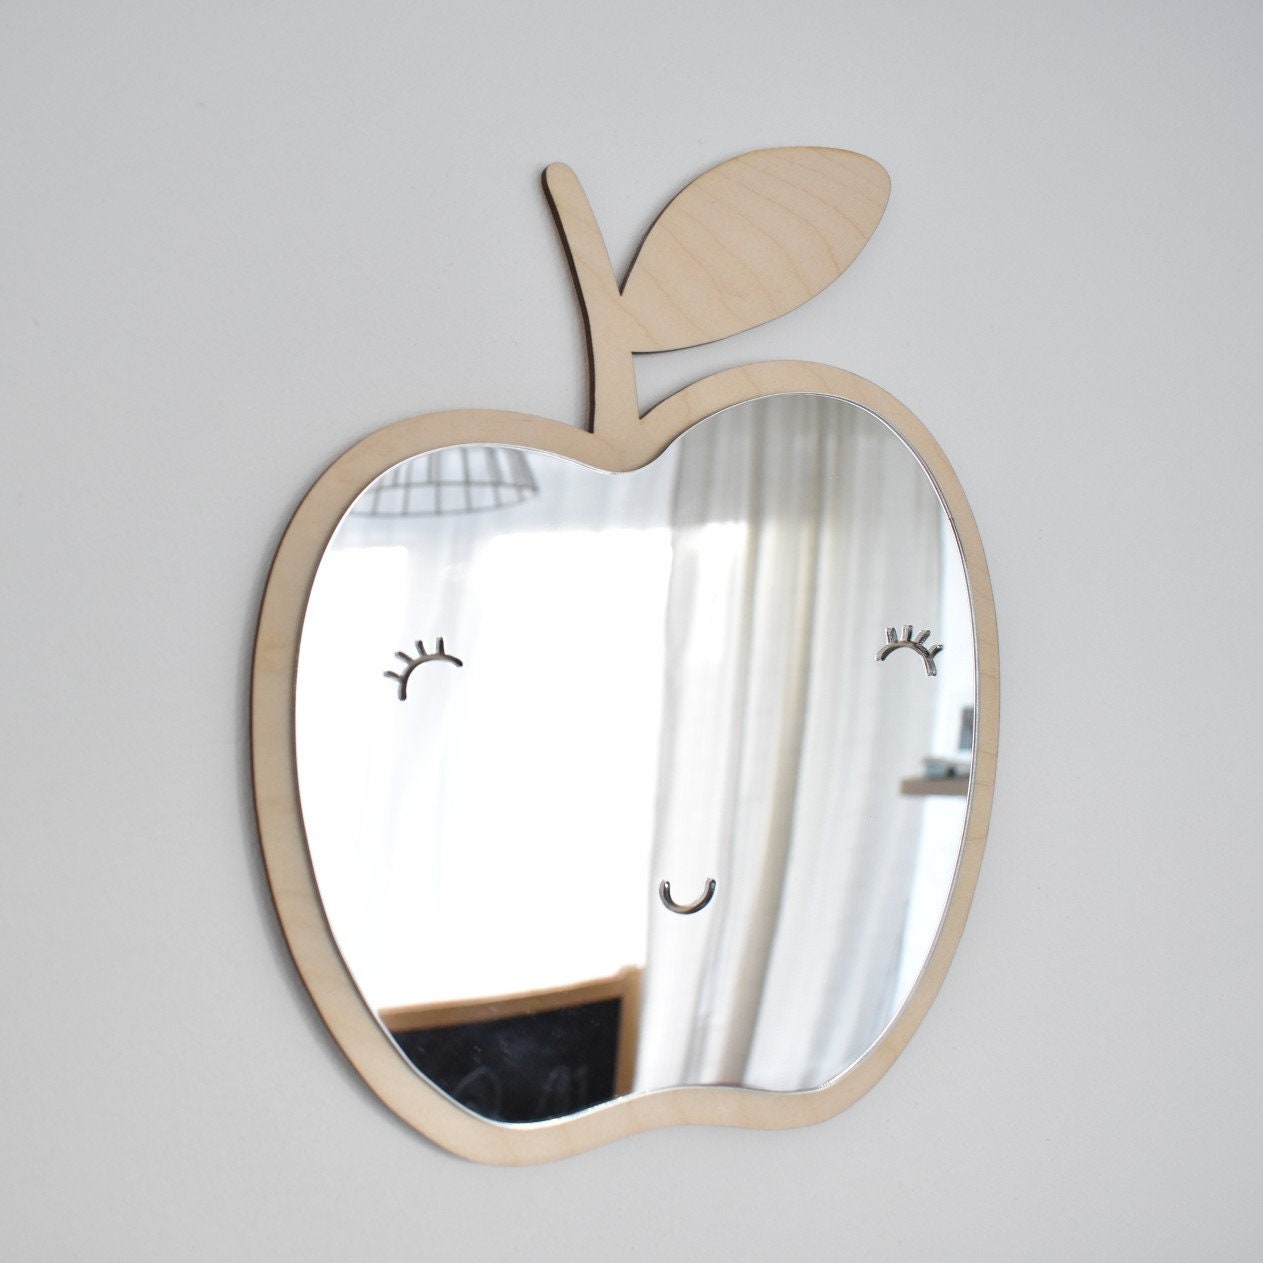 Miroir enfant: Pomme Sourire